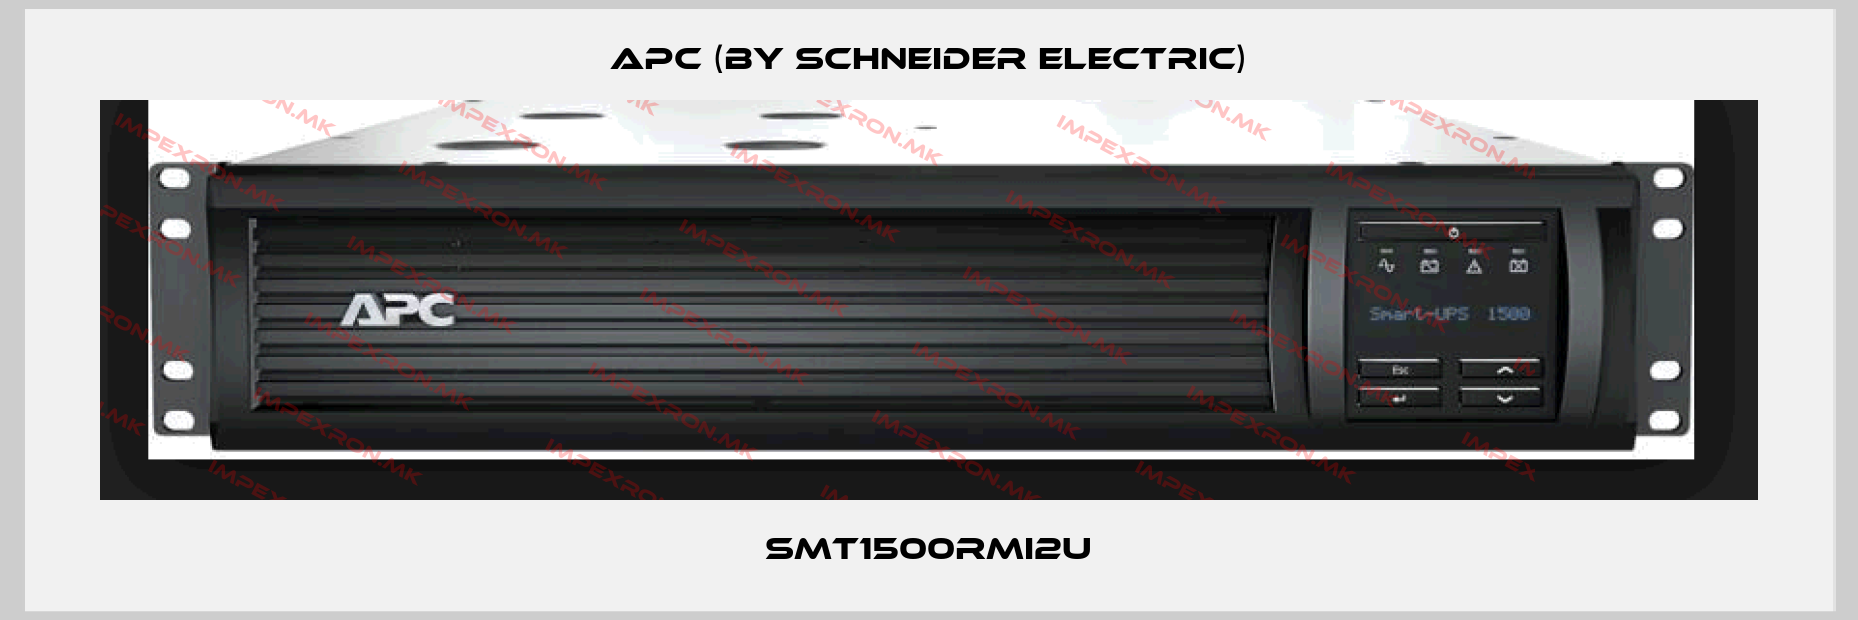 APC (by Schneider Electric)-SMT1500RMI2Uprice